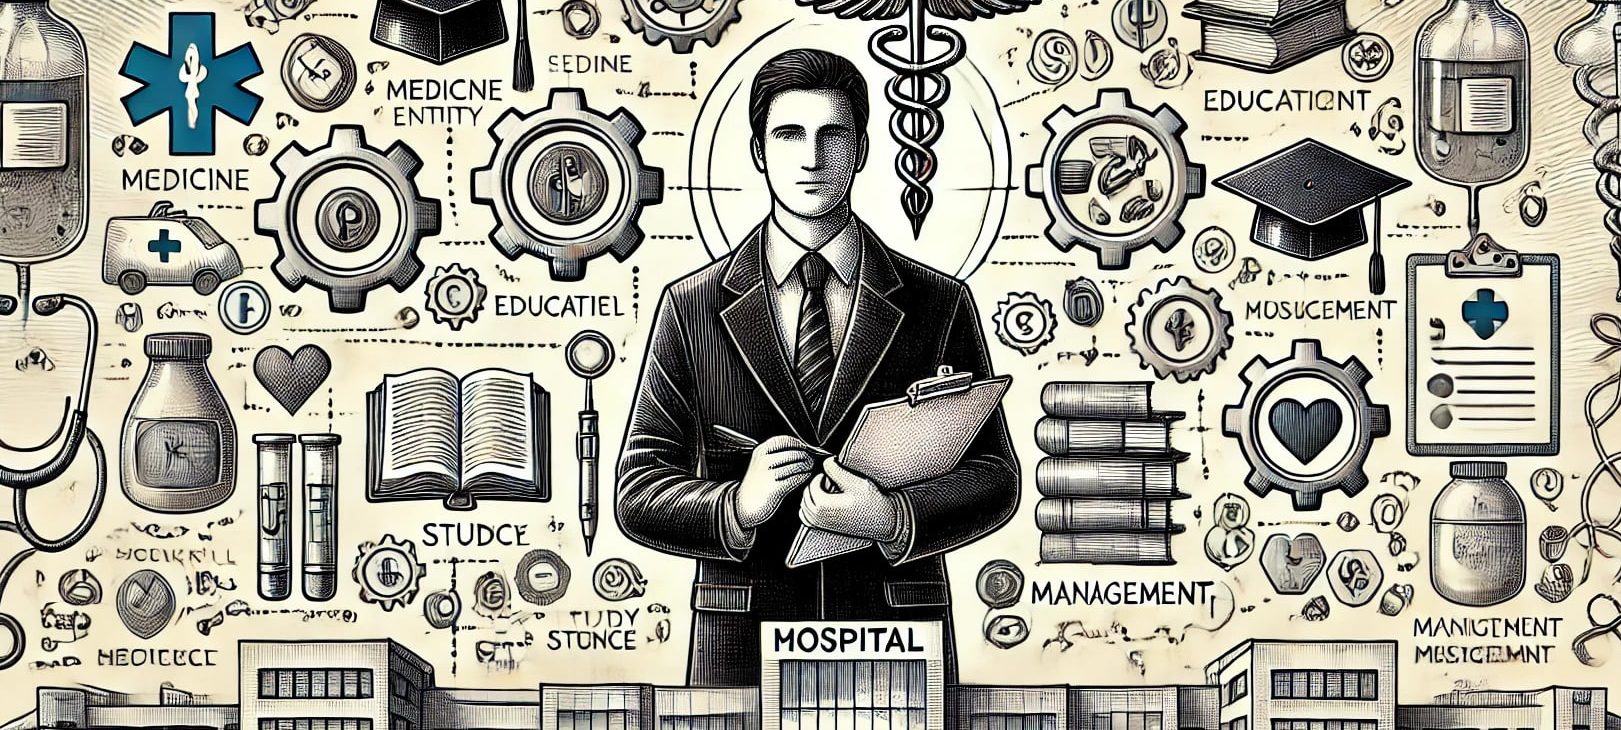 Grafika przedstawiająca zarządzanie podmiotem medycznym. W centralnej części znajduje się mężczyzna w garniturze. Otaczają go różne symbole medyczne i edukacyjne, symbolizujące zarządzanie. W tle widoczny jest budynek szpitala, a na pierwszym planie ikony symbolizujące różne oddziały medyczne i dziedziny studiów.